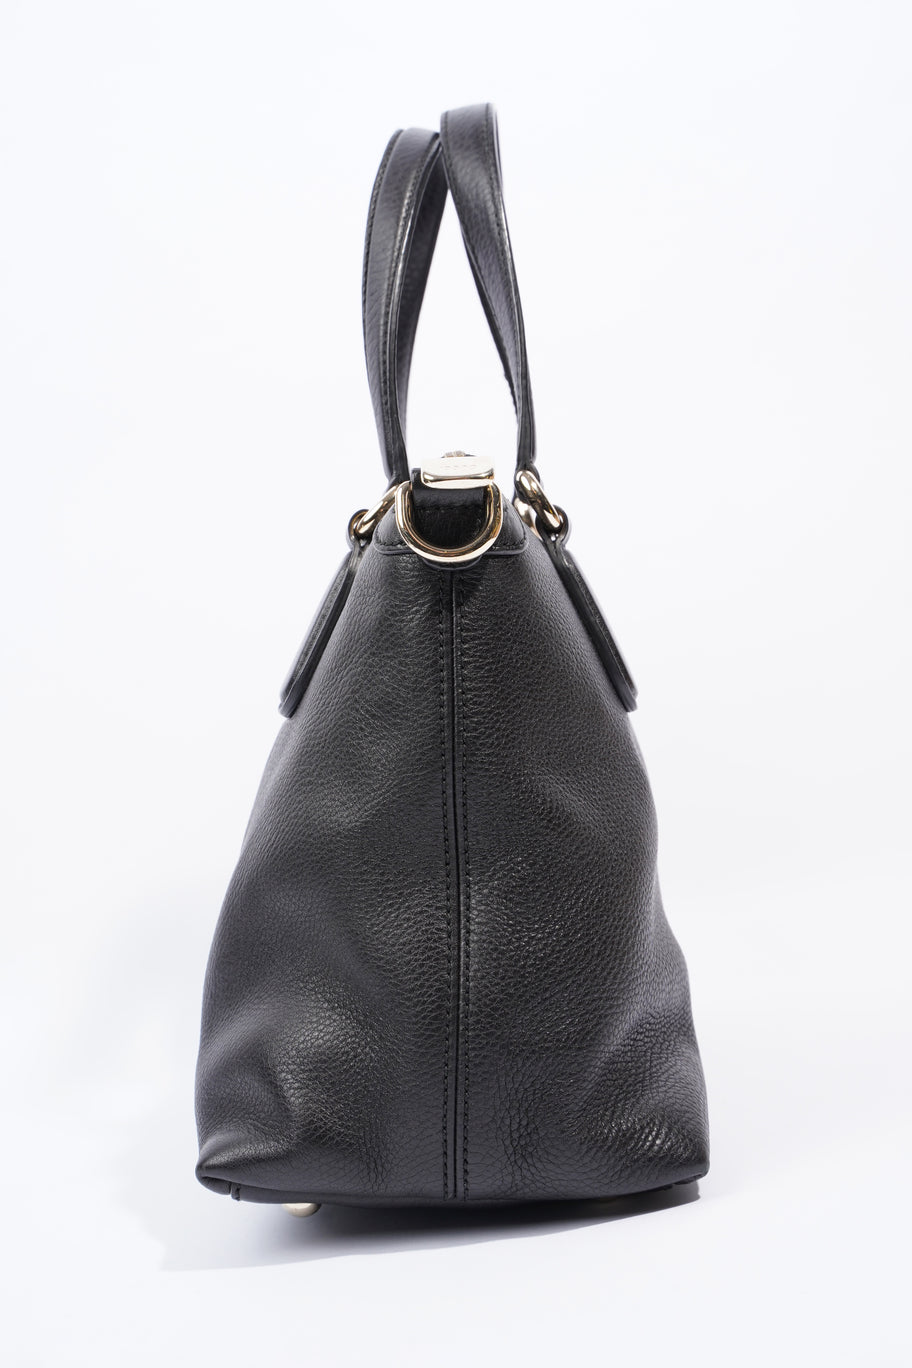 Soho 2Way Bag Black Leather Image 4